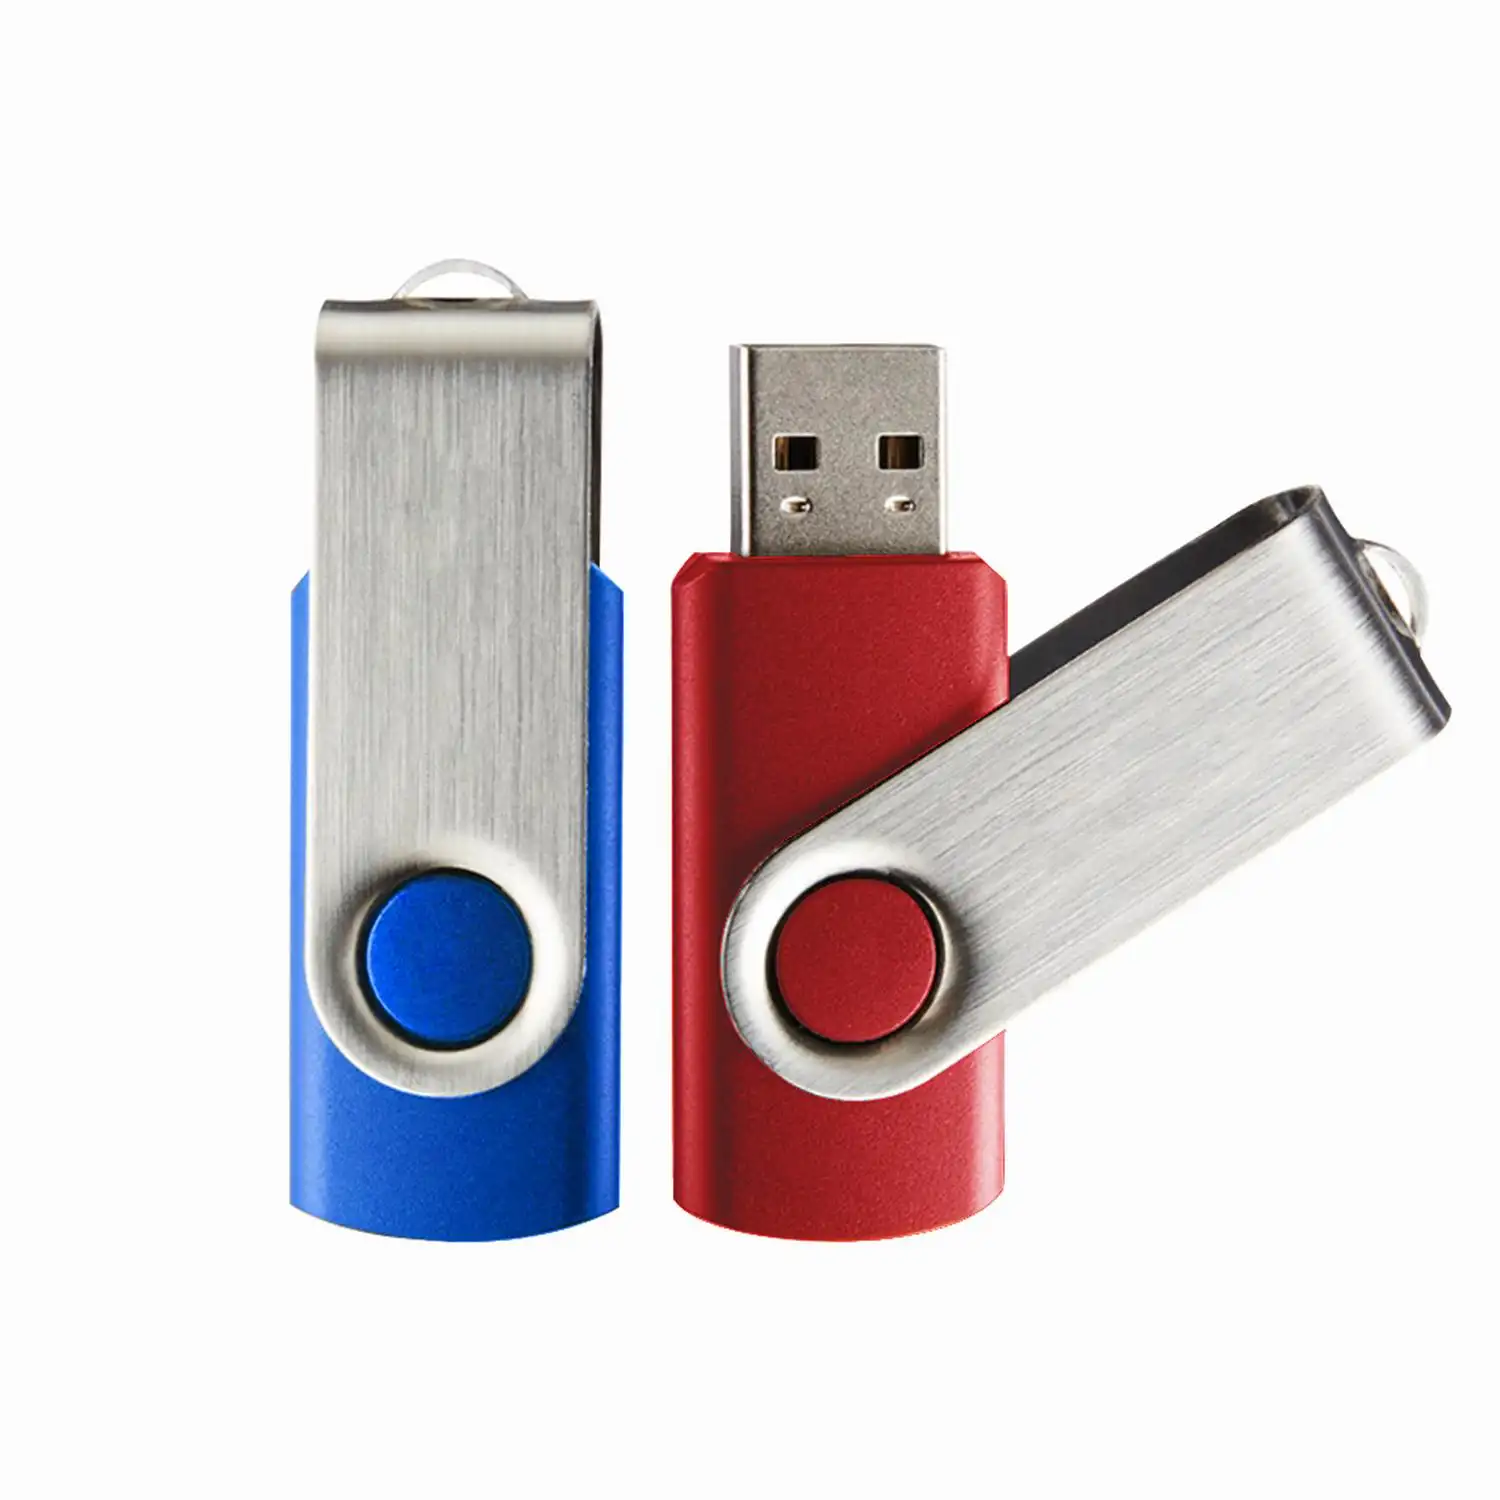 Fabbrica all'ingrosso a buon mercato regali personalizzati flash drive Pen Drive USB chiavetta 1gb 2gb 4gb 8gb 16gb 32gb 64gb 128g USB 2.0 3.0